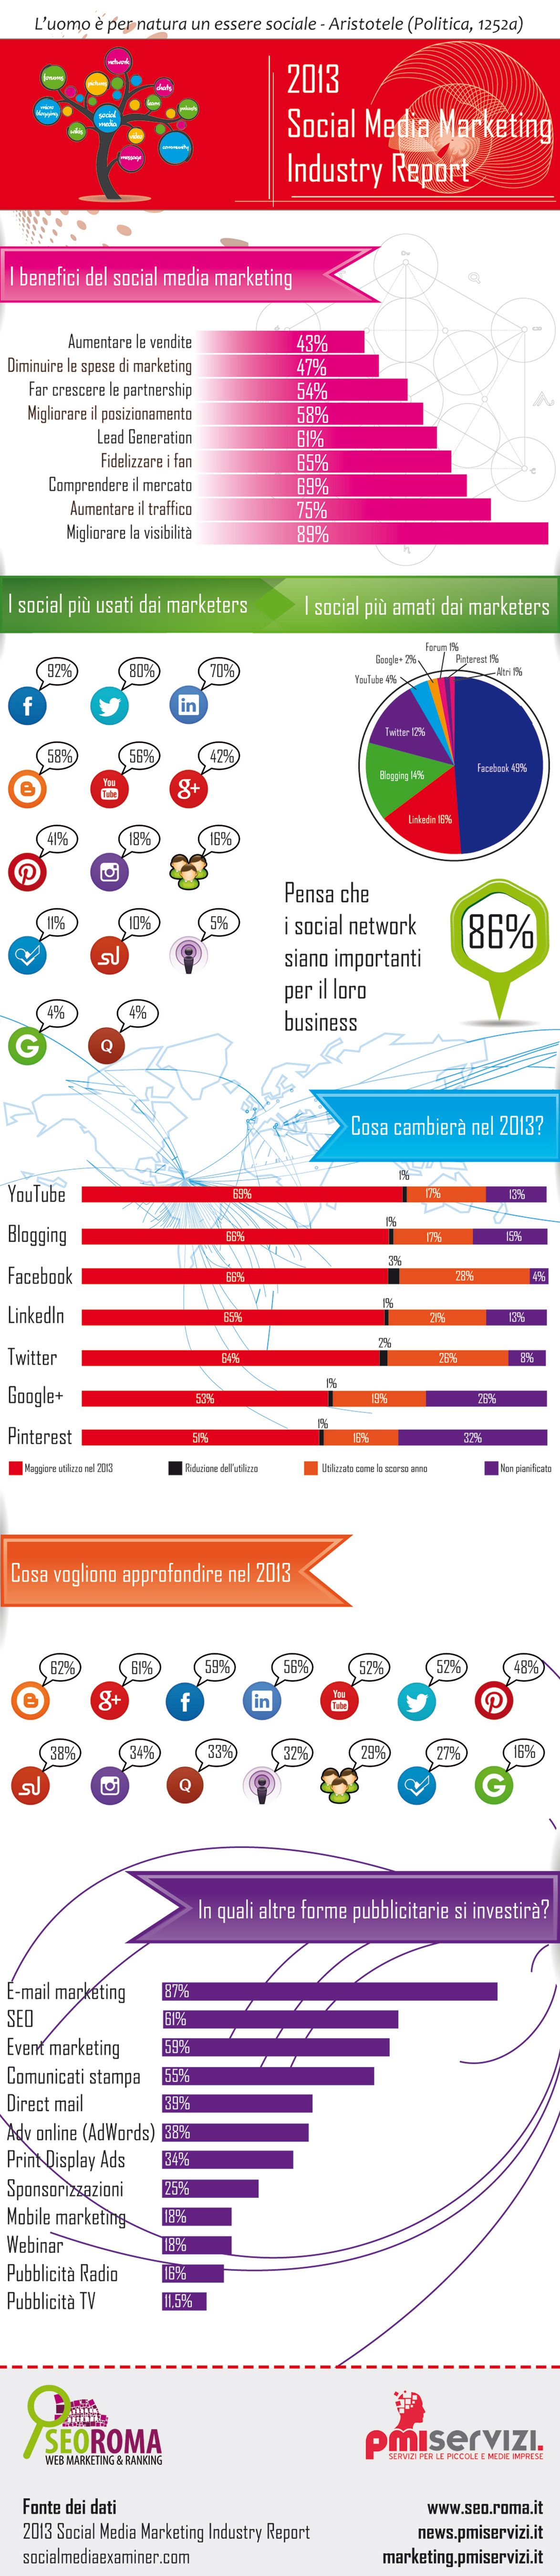 Come si muovono le aziende sui social media: infografica del report 2013